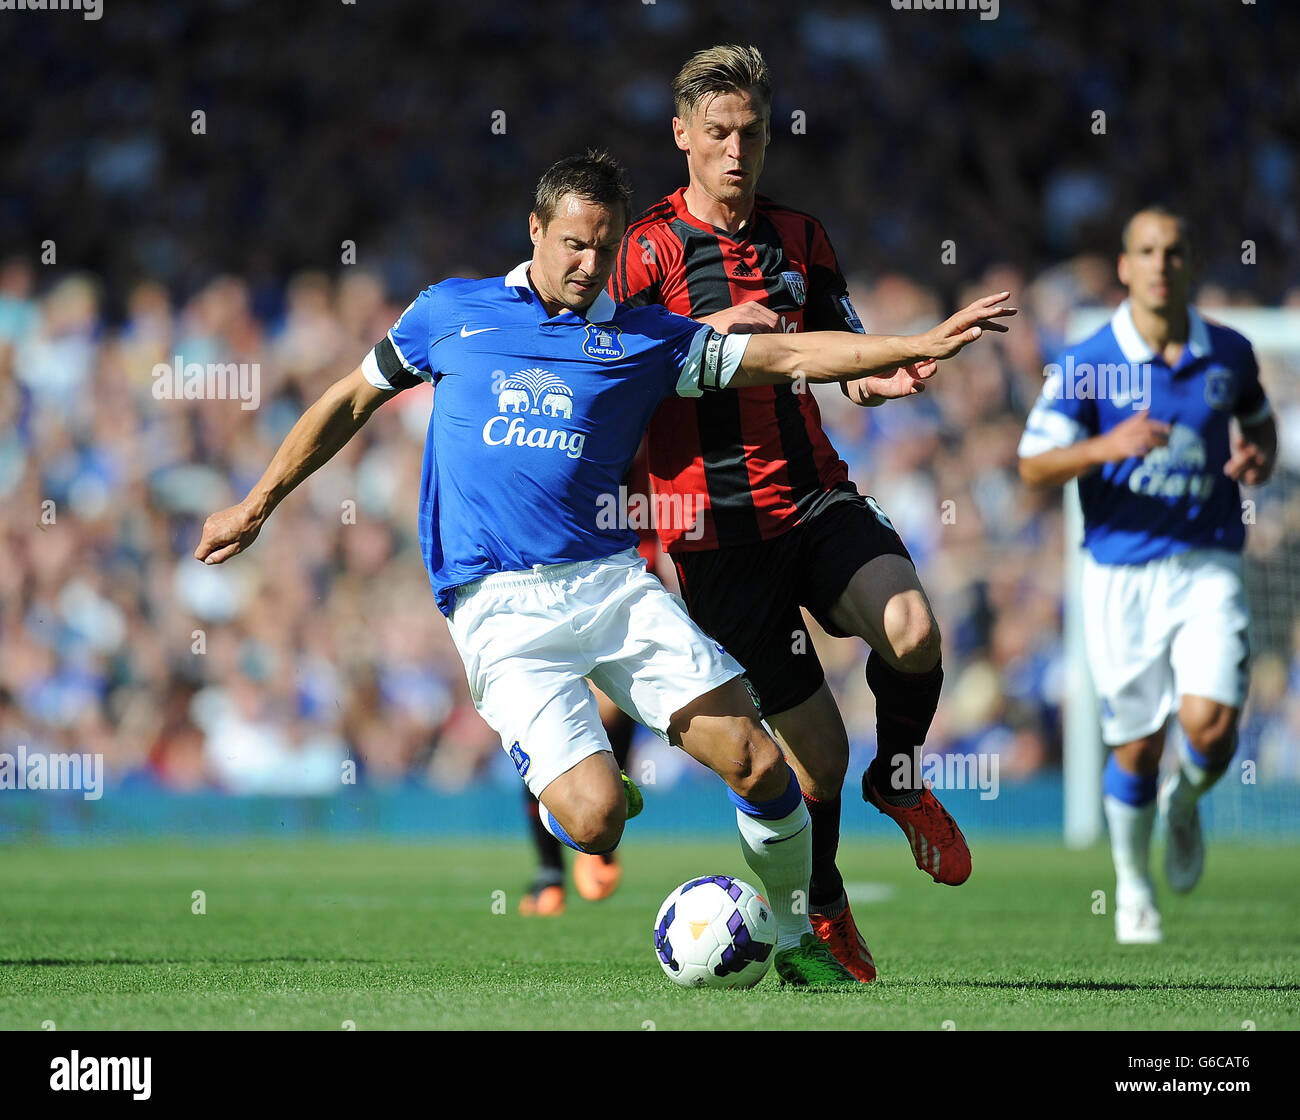 Calcio - Barclays Premier League - Everton / West Bromwich Albion - Goodison Park. Phil Jagielka di Everton (a sinistra) e Markus Rosenberg di West Bromwich Albion (a destra) lottano per la palla. Foto Stock